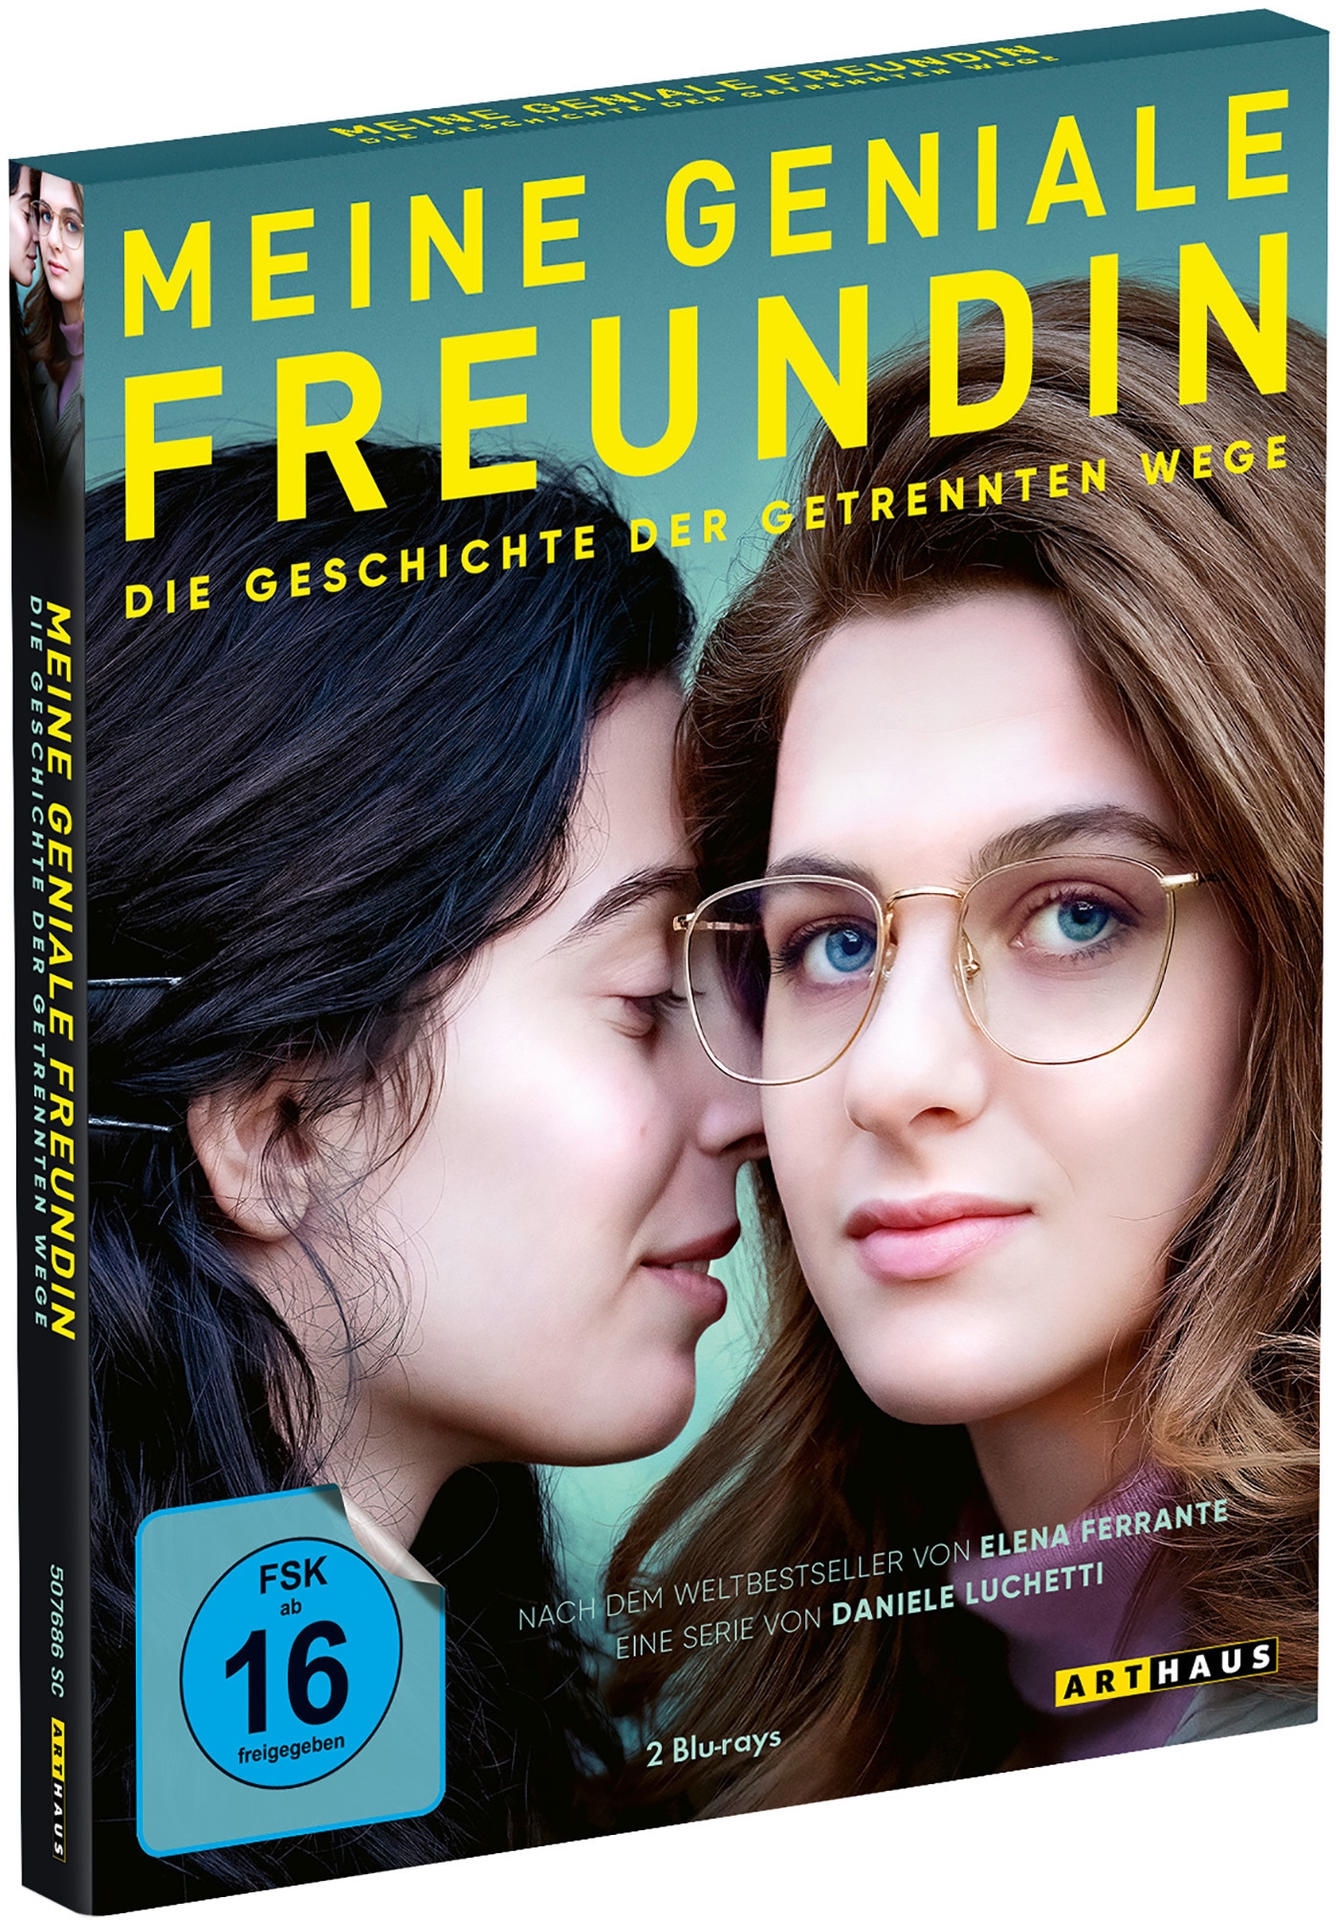 Die Wege getrennten Freundin Geschichte geniale Meine - Staffel - 3 der Blu-ray